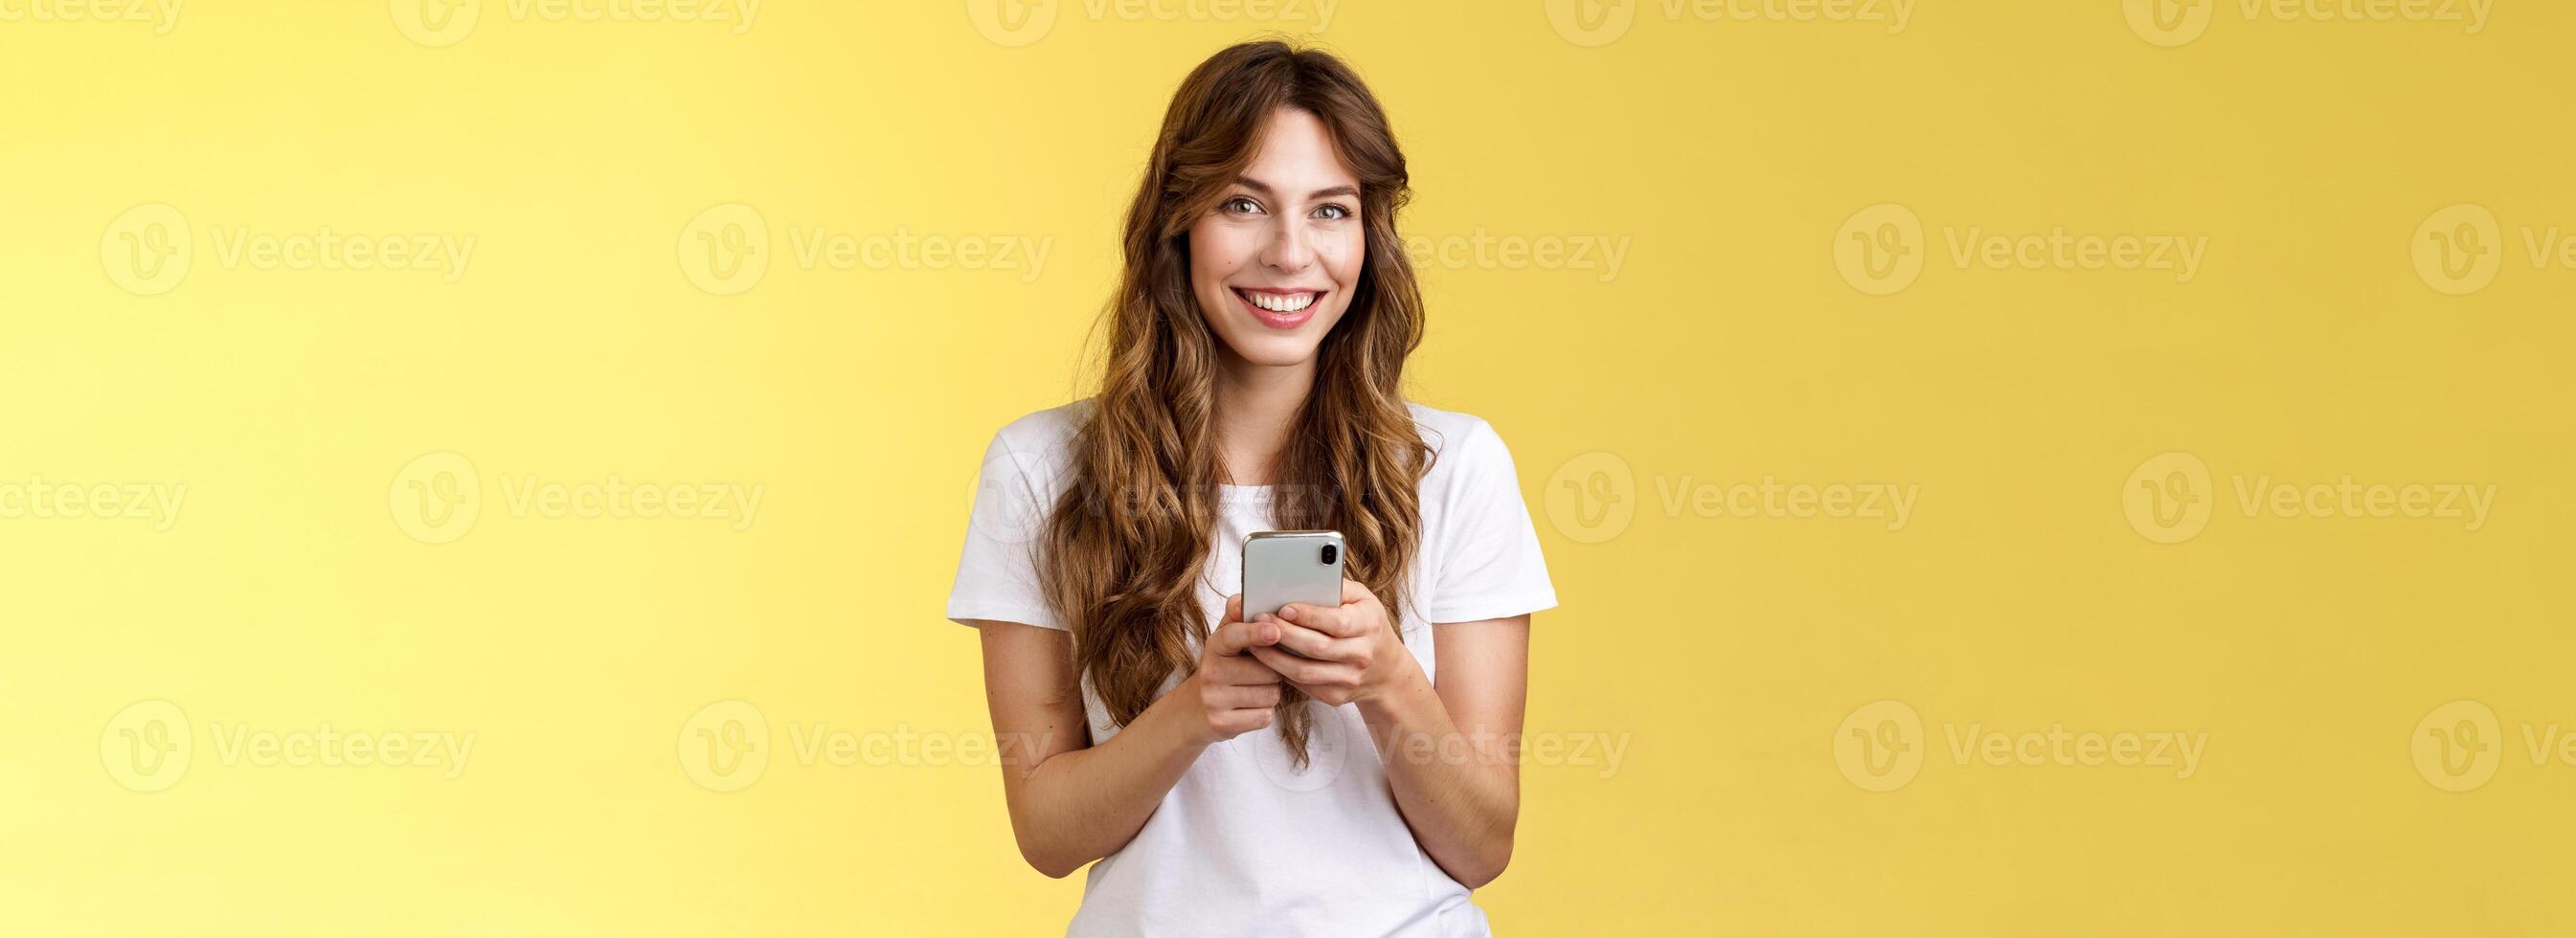 entusiasta encantador sociable joven niña mensajería amigo enviando fotos social medios de comunicación sostener teléfono inteligente Mira cámara felizmente simpático sonriente estar amarillo antecedentes casual atuendo